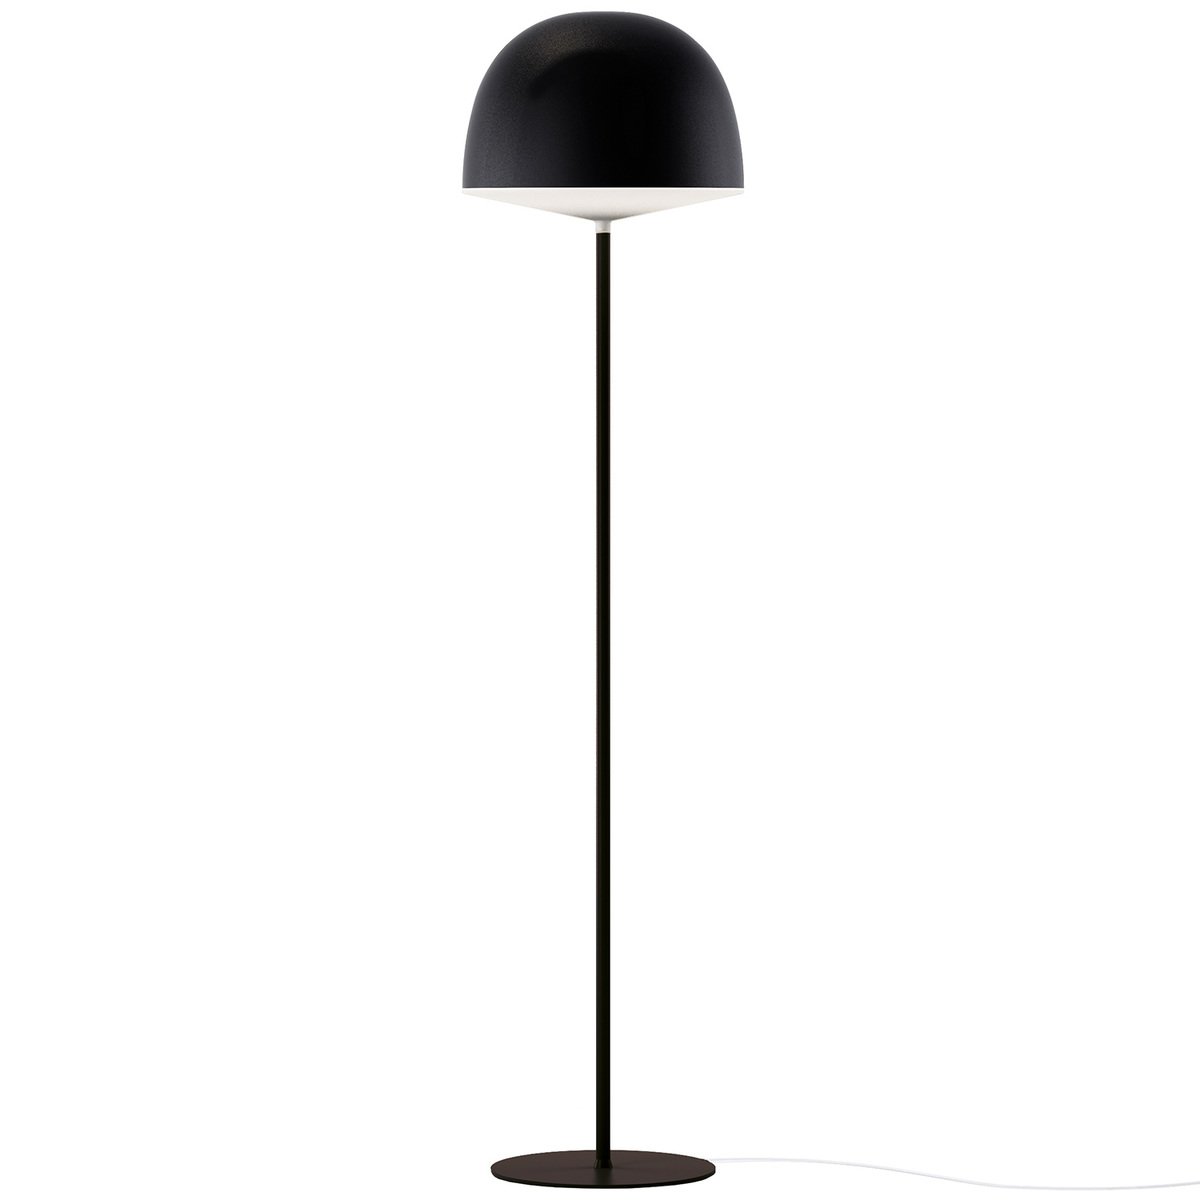 Fontanaarte Cheshire Floor Lamp, Black